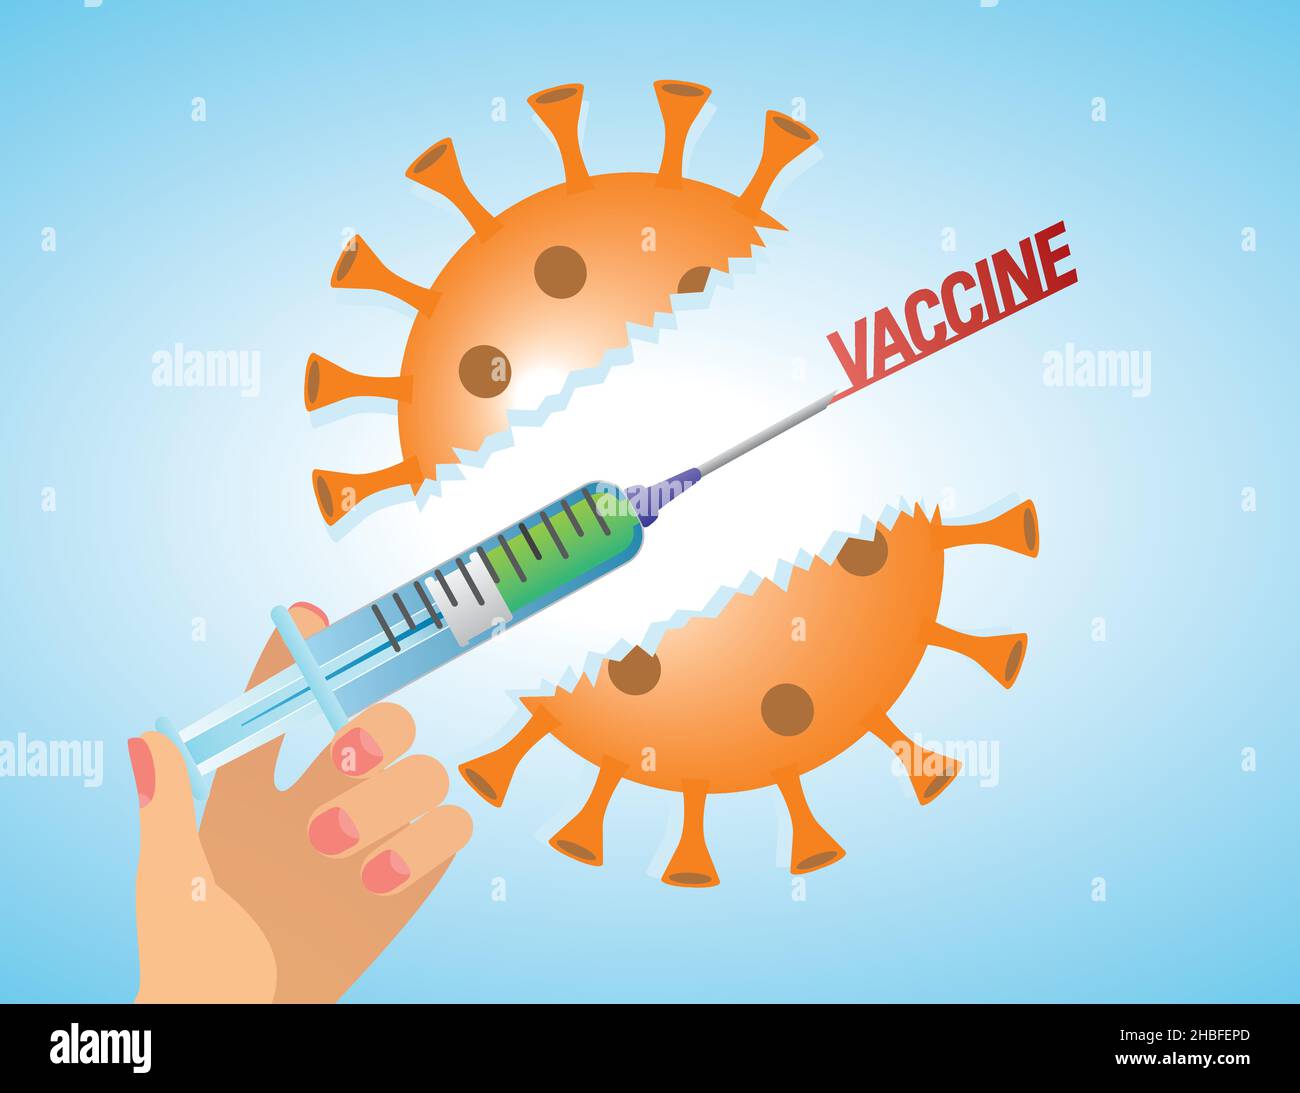 Durchbrechen mit Impfung. Hand mit Spritze, die durch das große Coronavirus bricht. Vektorgrafik. EPS10. Stock Vektor